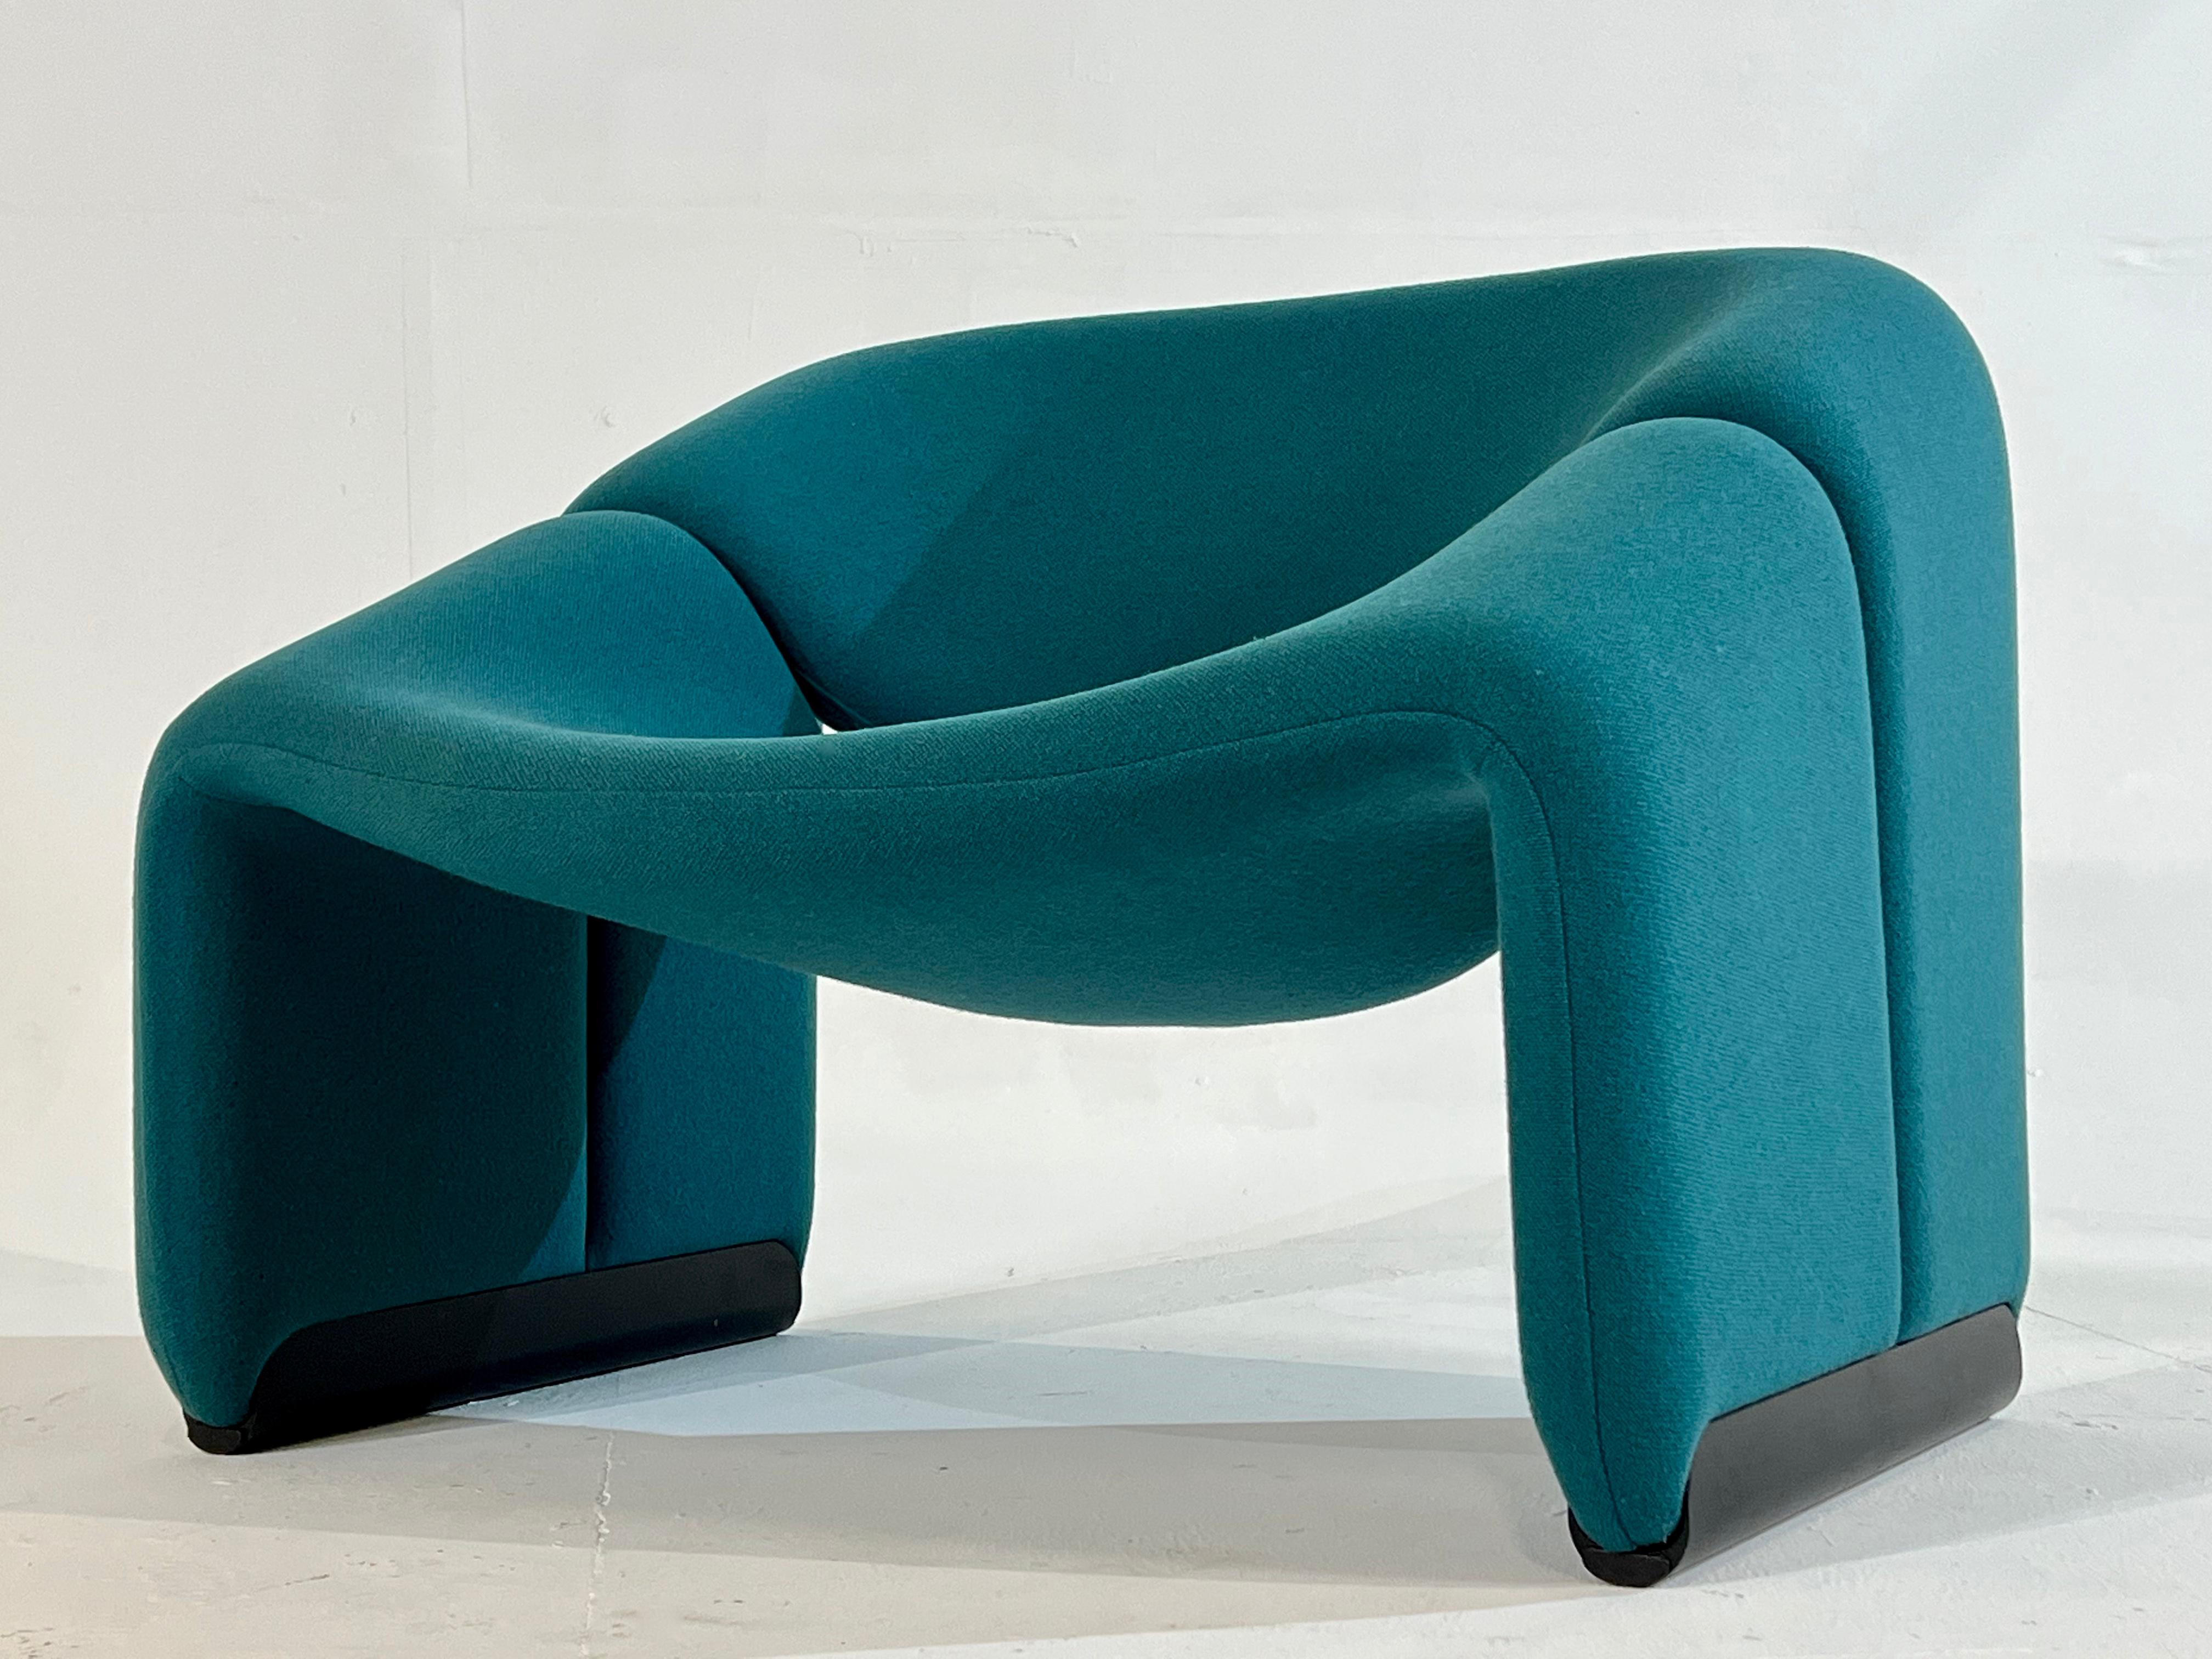 Fin du 20e siècle Paire de fauteuils F598 (Groovy) de Pierre Paulin pour Artifort. IL N'EN RESTE PLUS QU'UN ! en vente